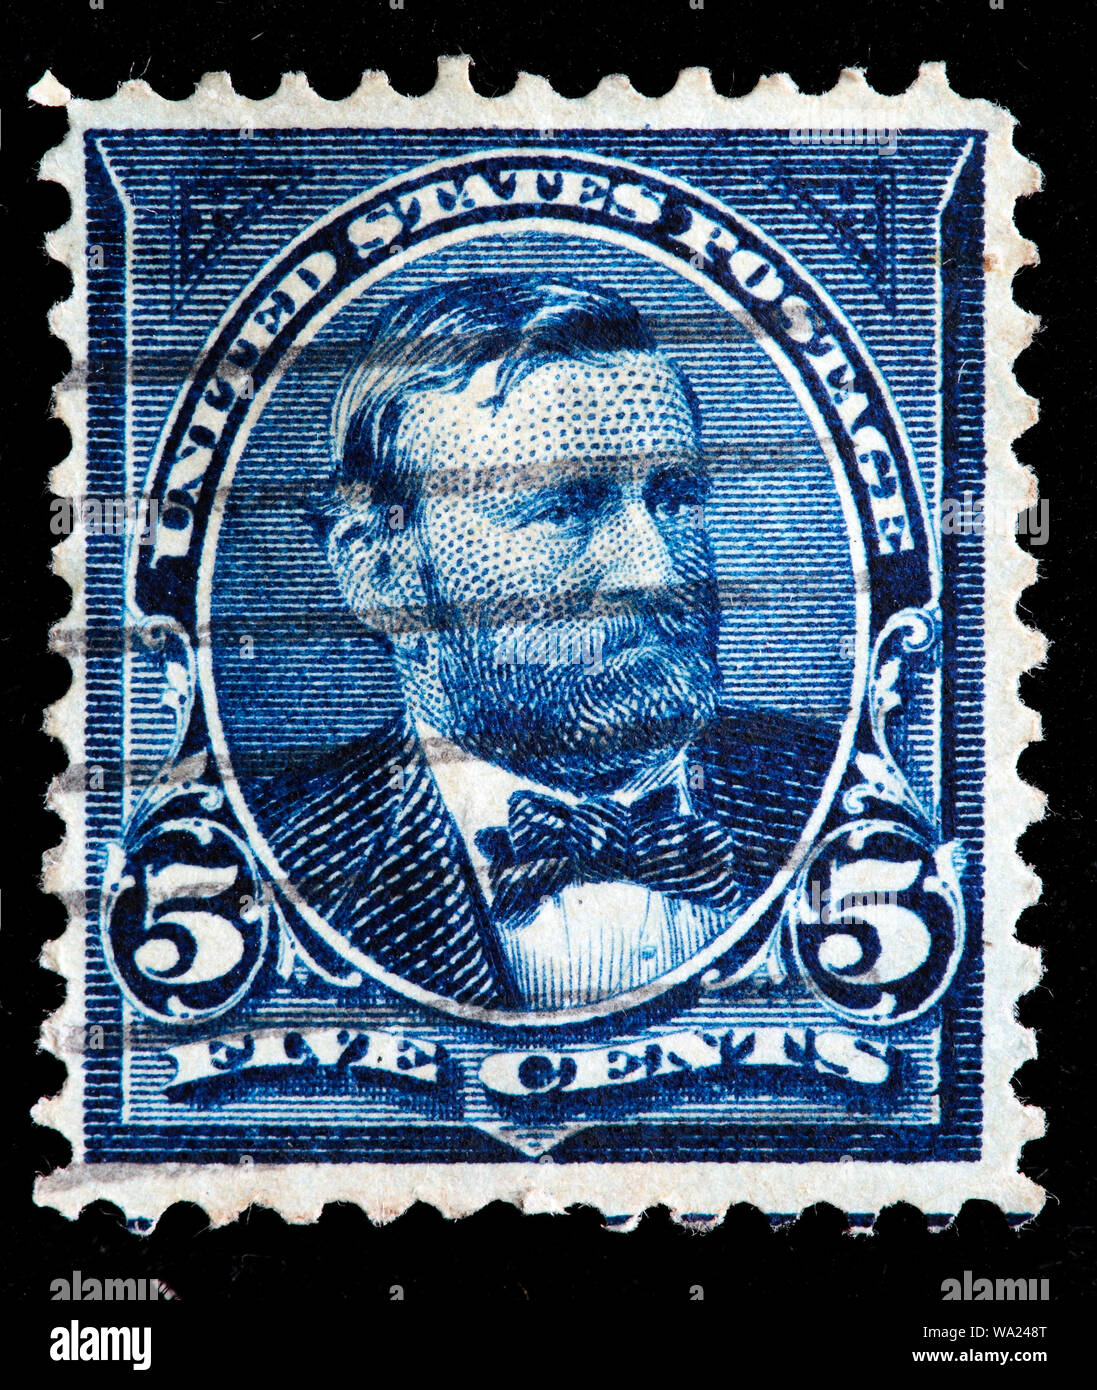 Ulysses S. Grant (1822-1885), Président des Etats-Unis, timbre-poste, USA, 1898 Banque D'Images